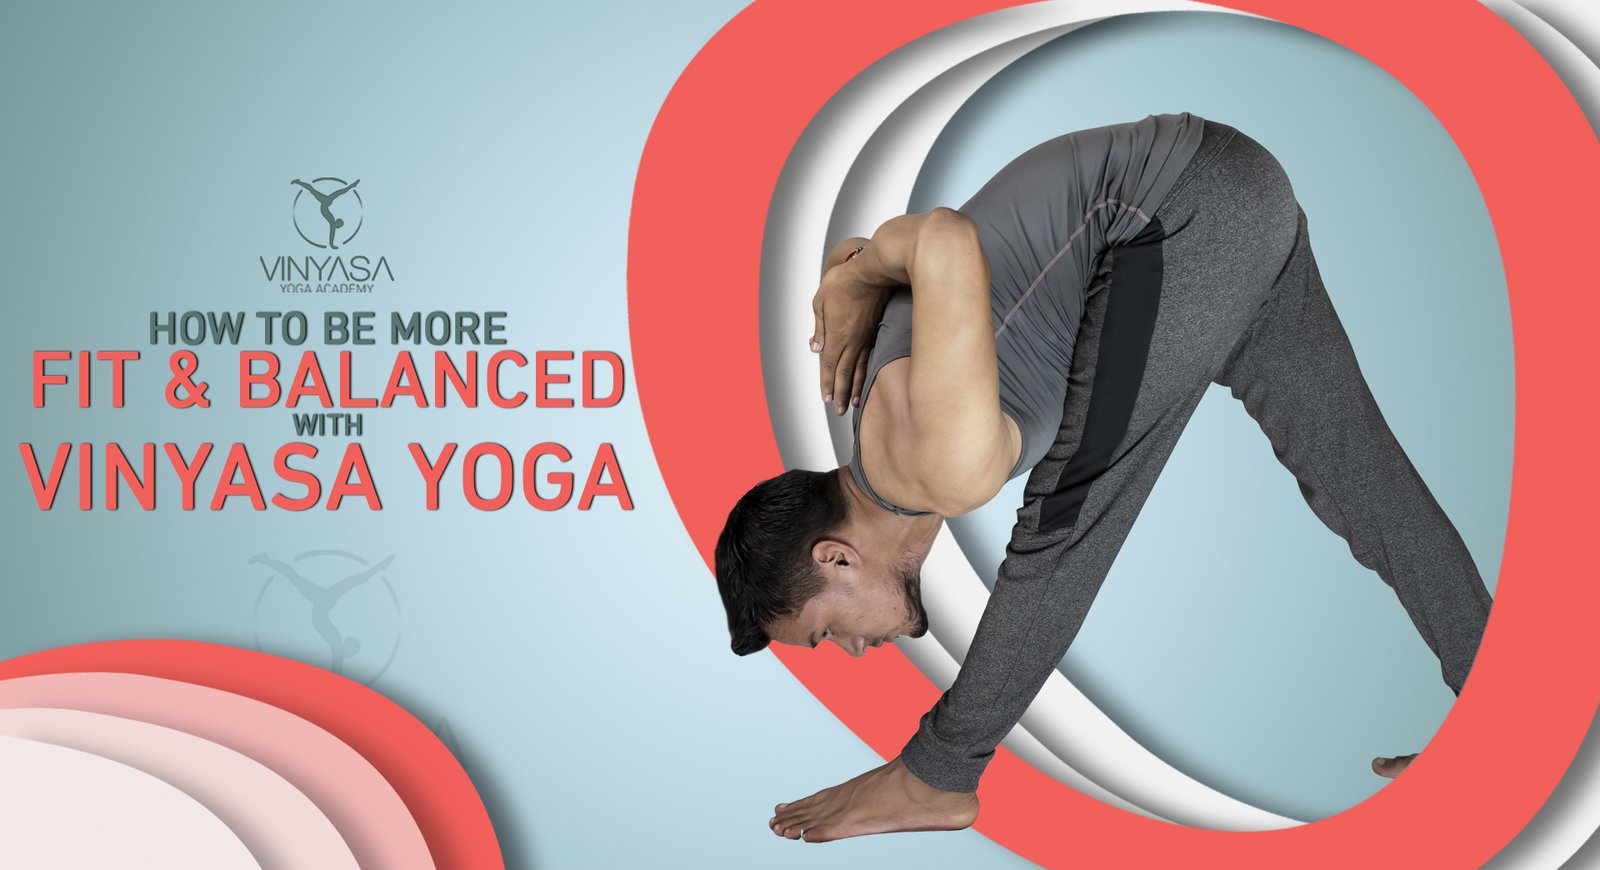 What Is Vinyasa Yoga?